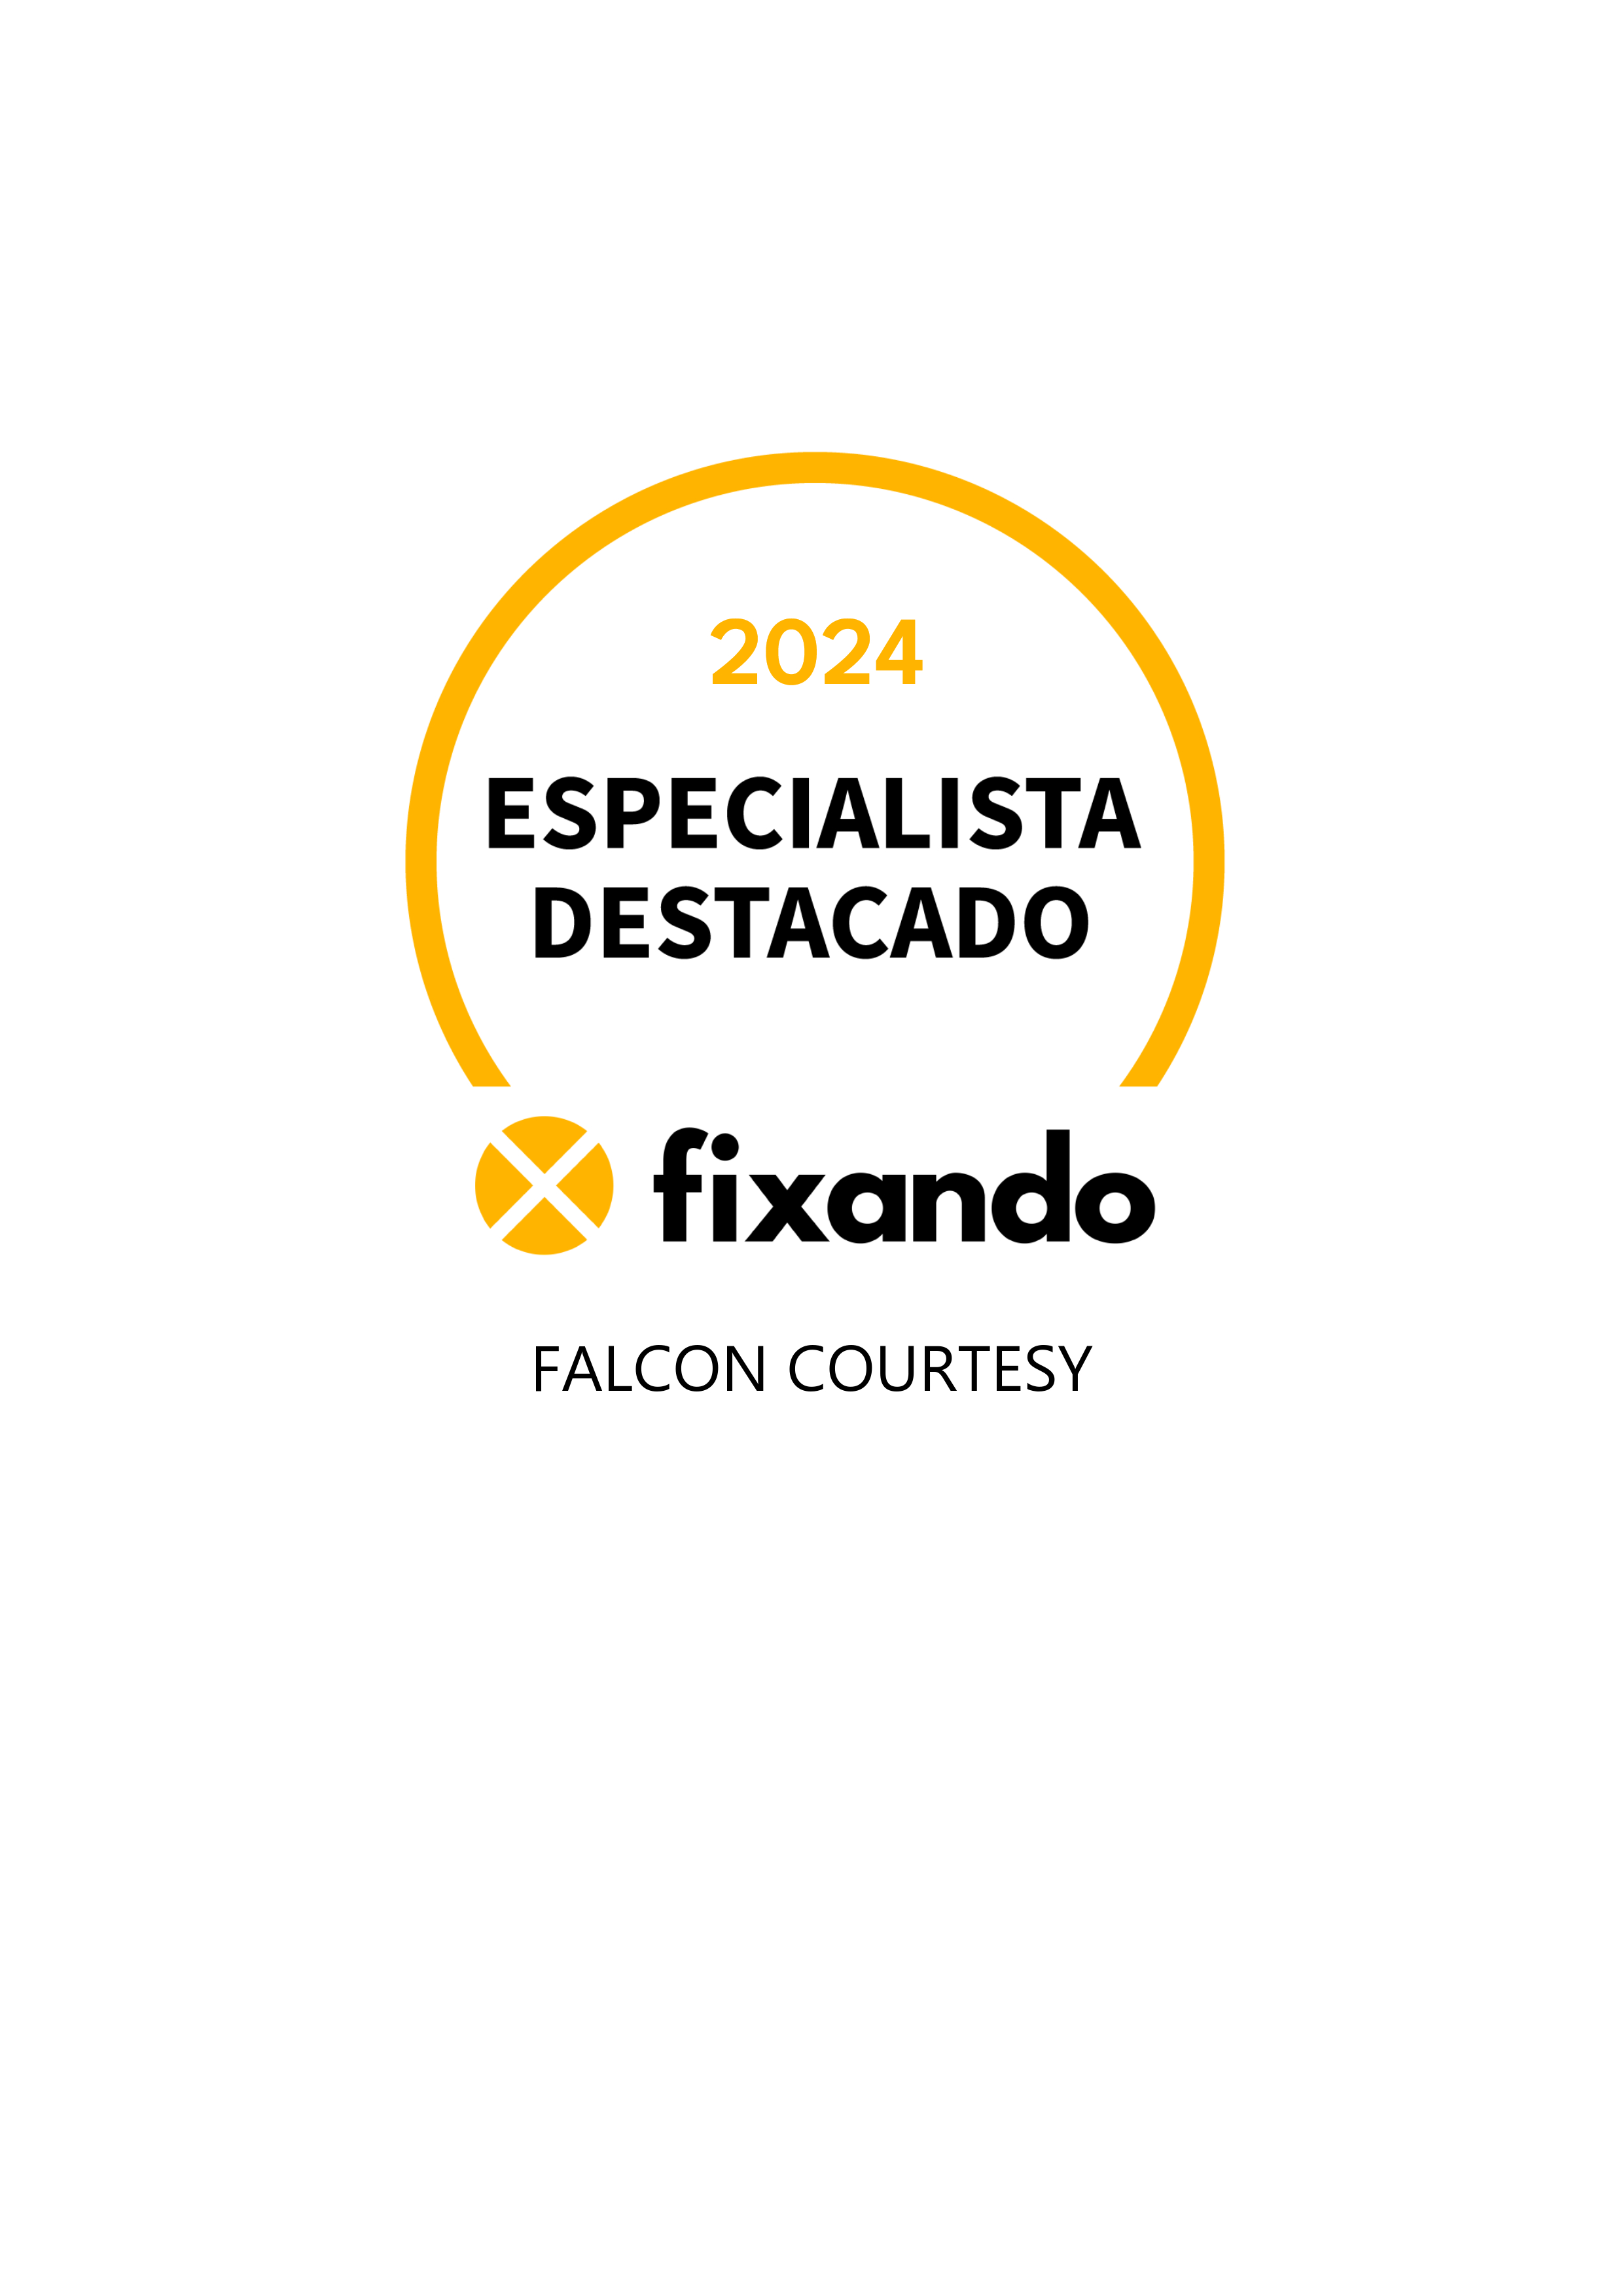 Falcon Courtesy - Gondomar - Reparação ou Substituição de Pavimento em Pedra ou Ladrilho